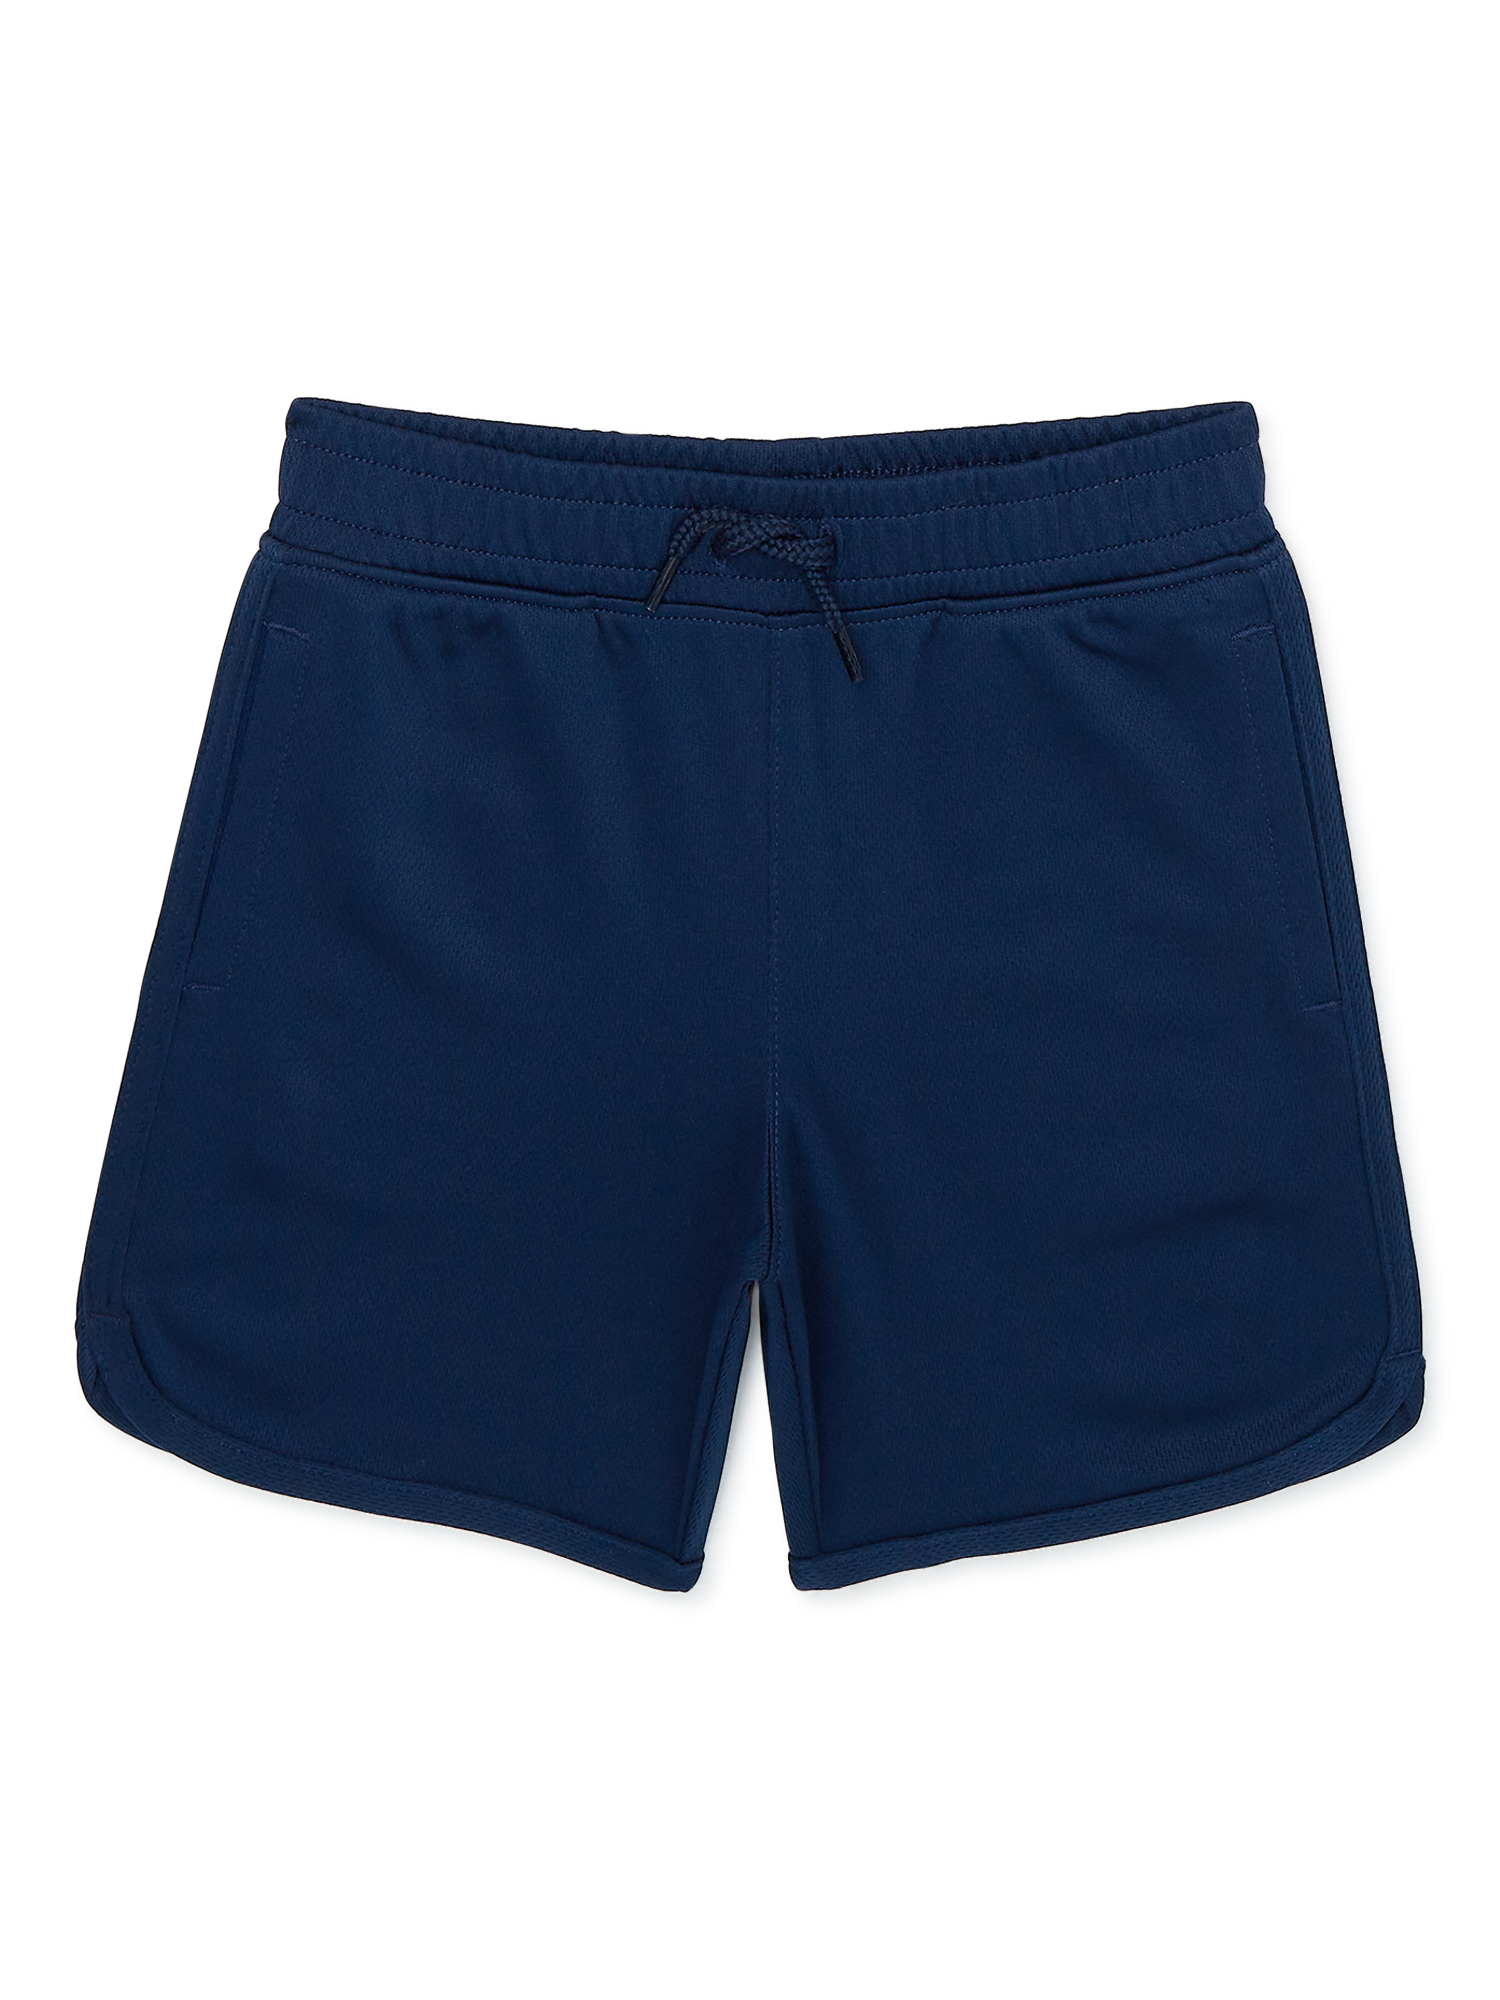 Garanimals Toddler Boys Mesh Shorts, Sizes 12M-5T - image 1 of 4